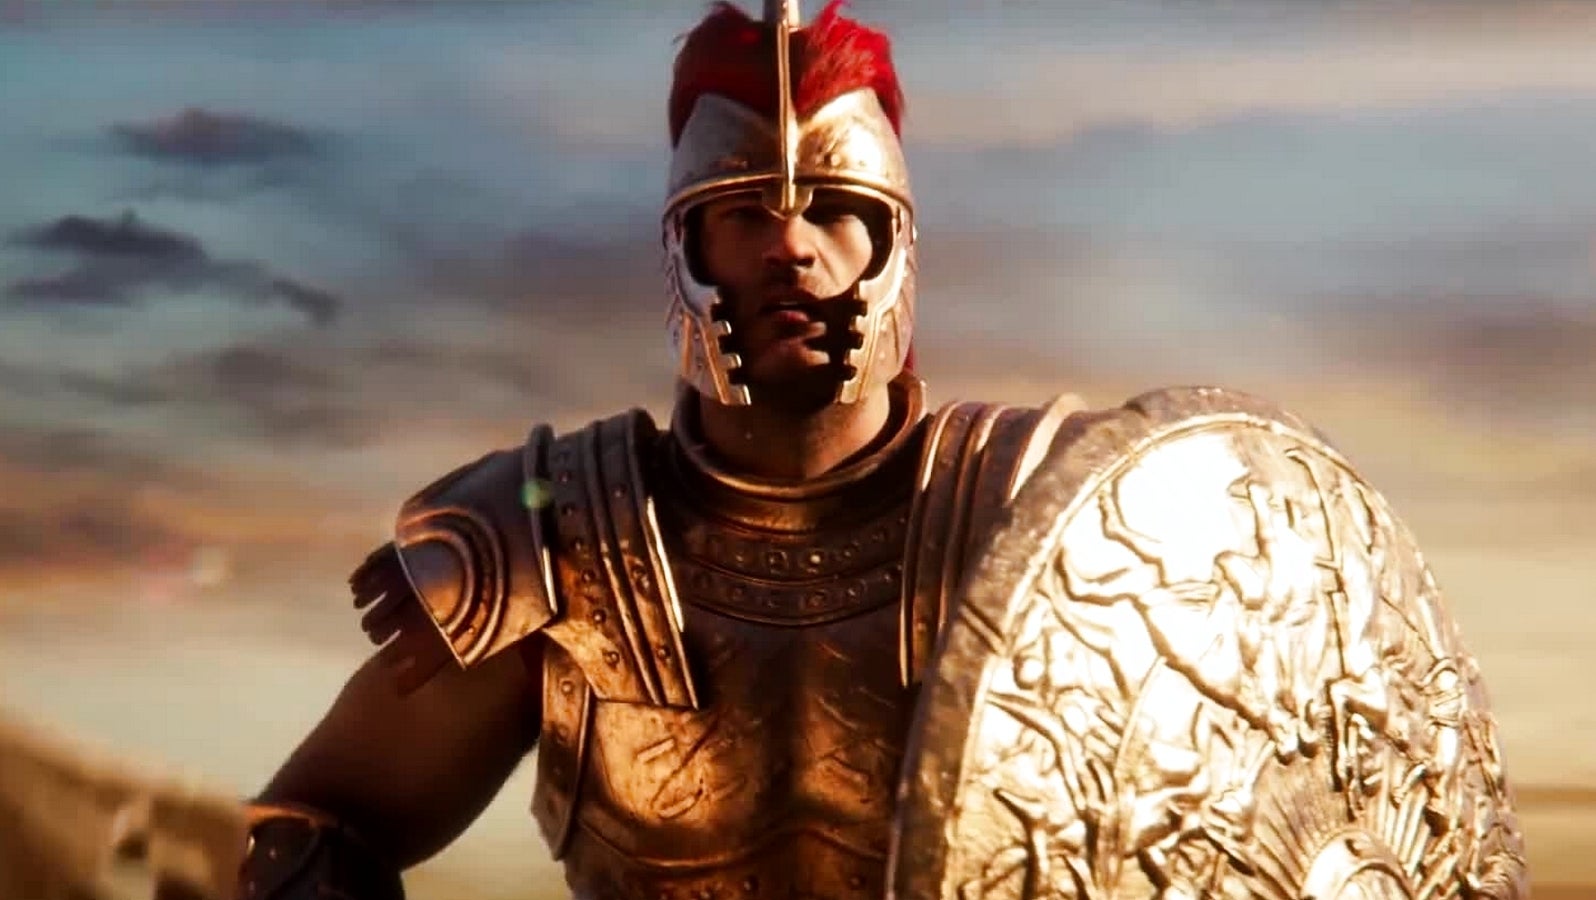 Bilder zu A Total War Saga: Troy Test: Machtspiele im antiken Griechenland